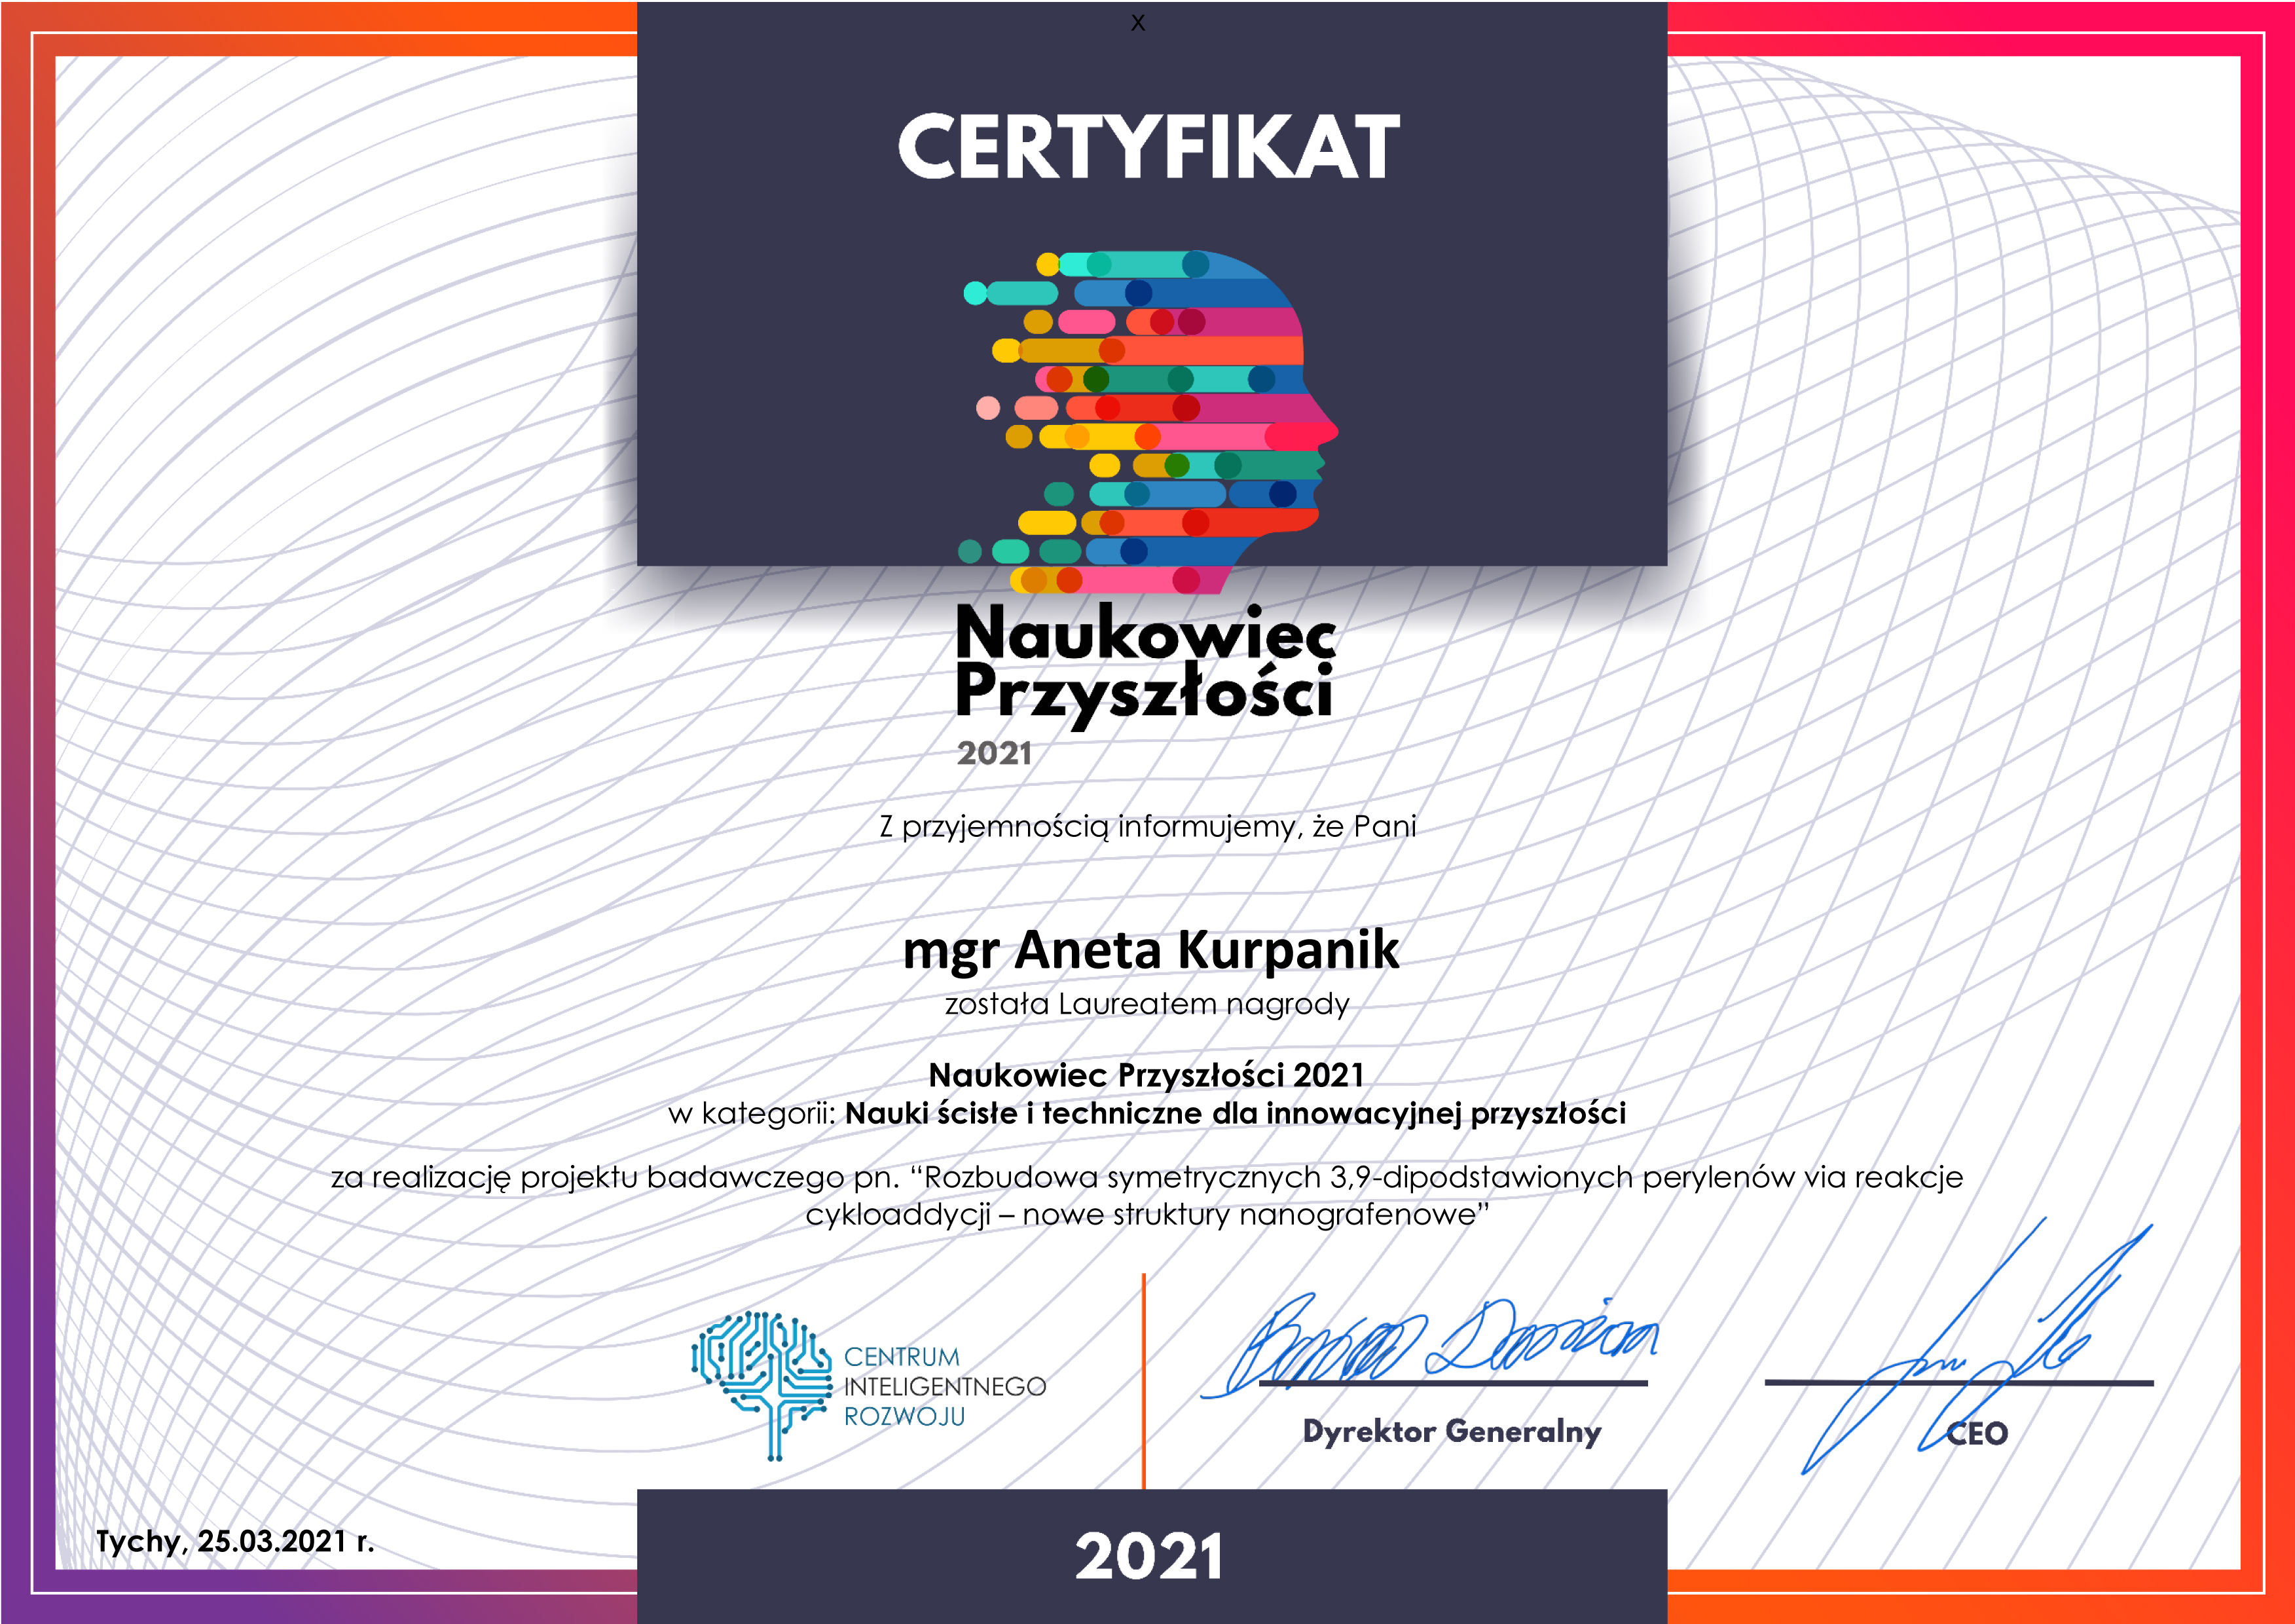 Naukowiec przyszłości - Certyfikat - mgr Aneta Kurpanik